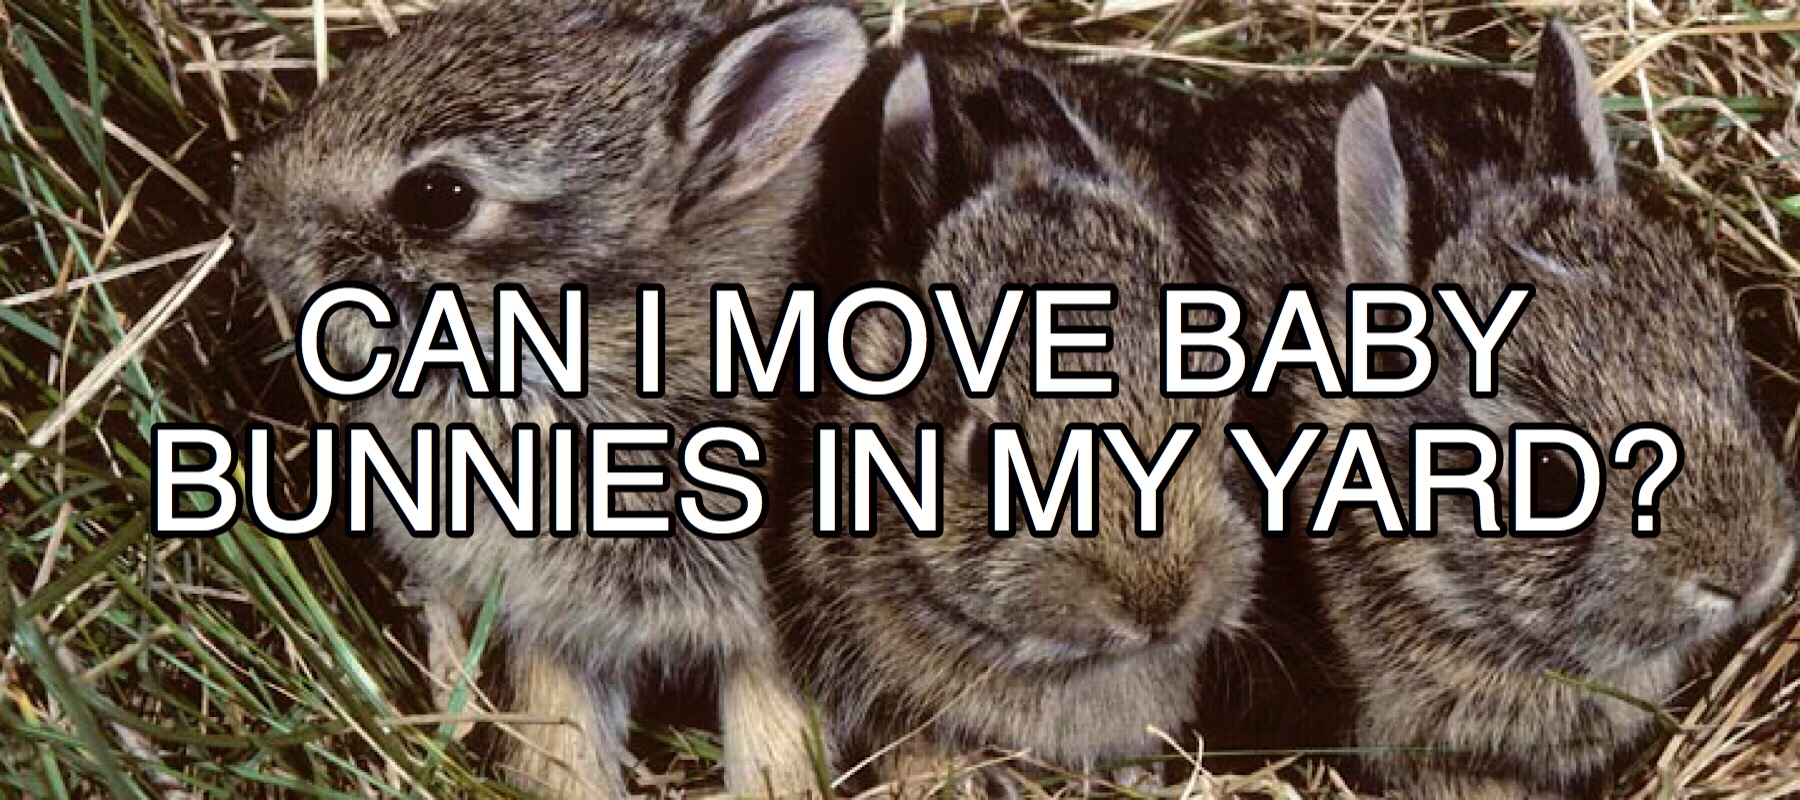 Should baby bunnies move?